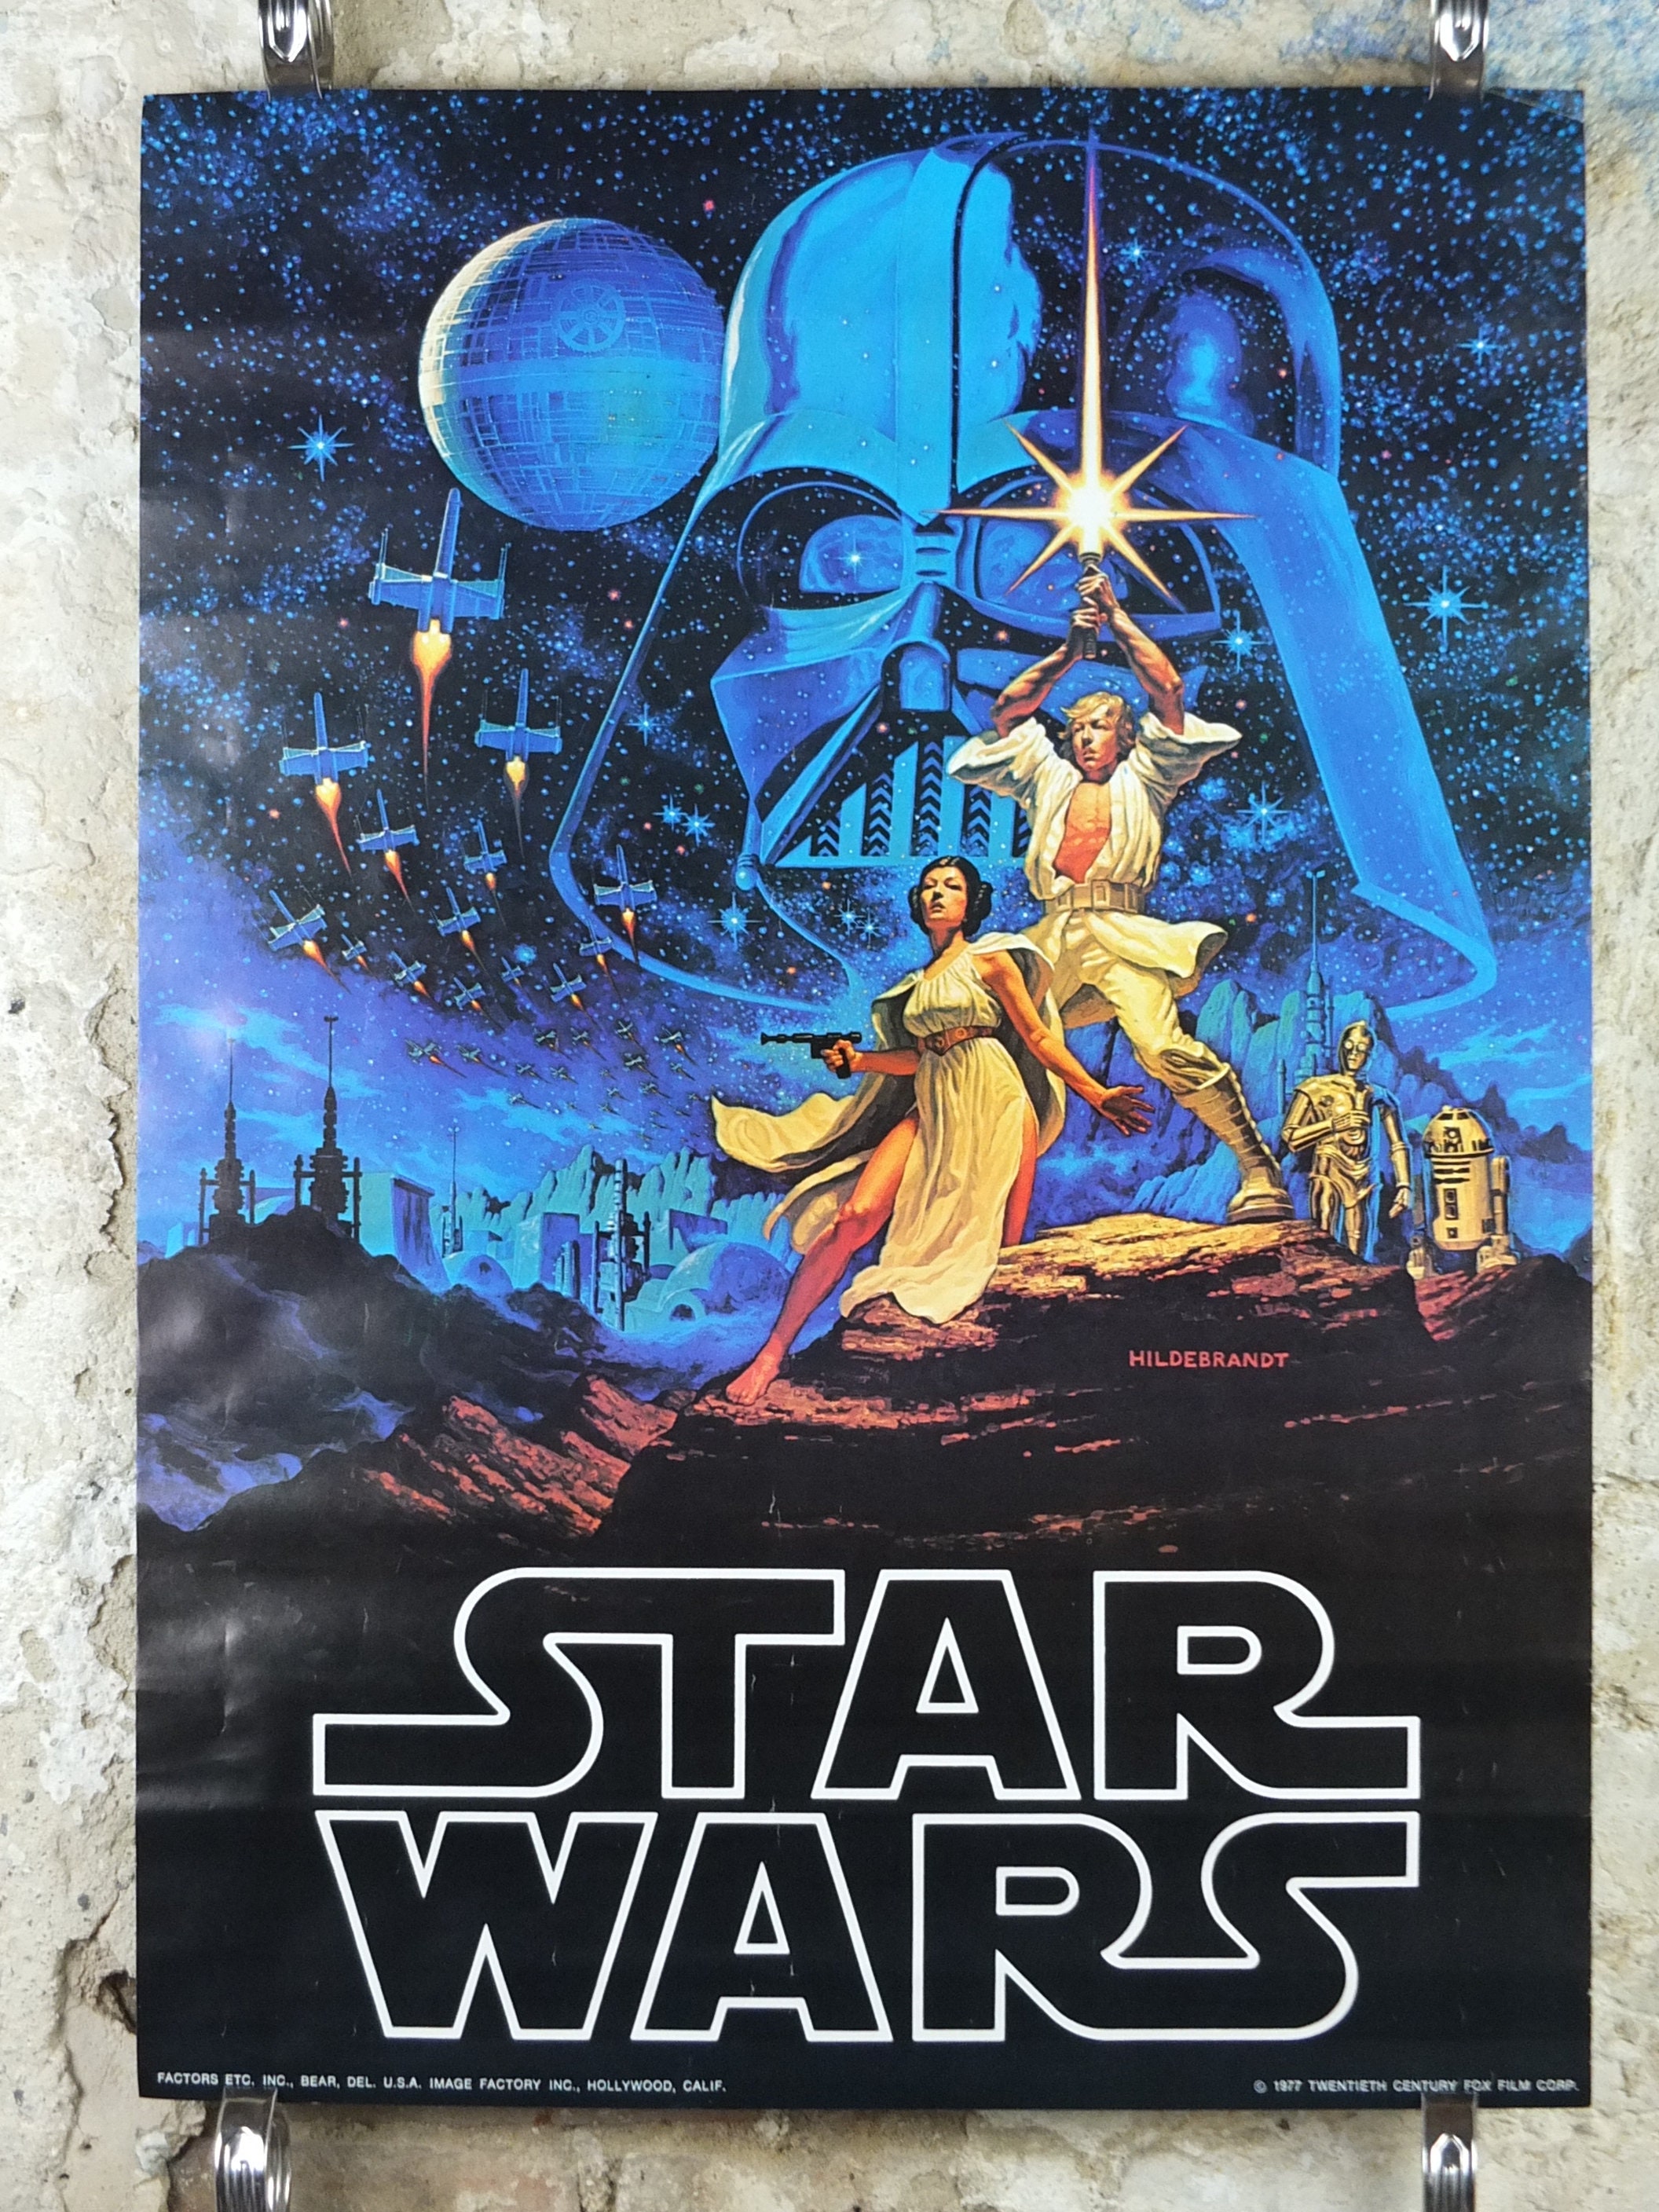 audition controller væv 1977 Hildebrandt Star Wars Poster Vintage Style B Luke - Etsy Denmark